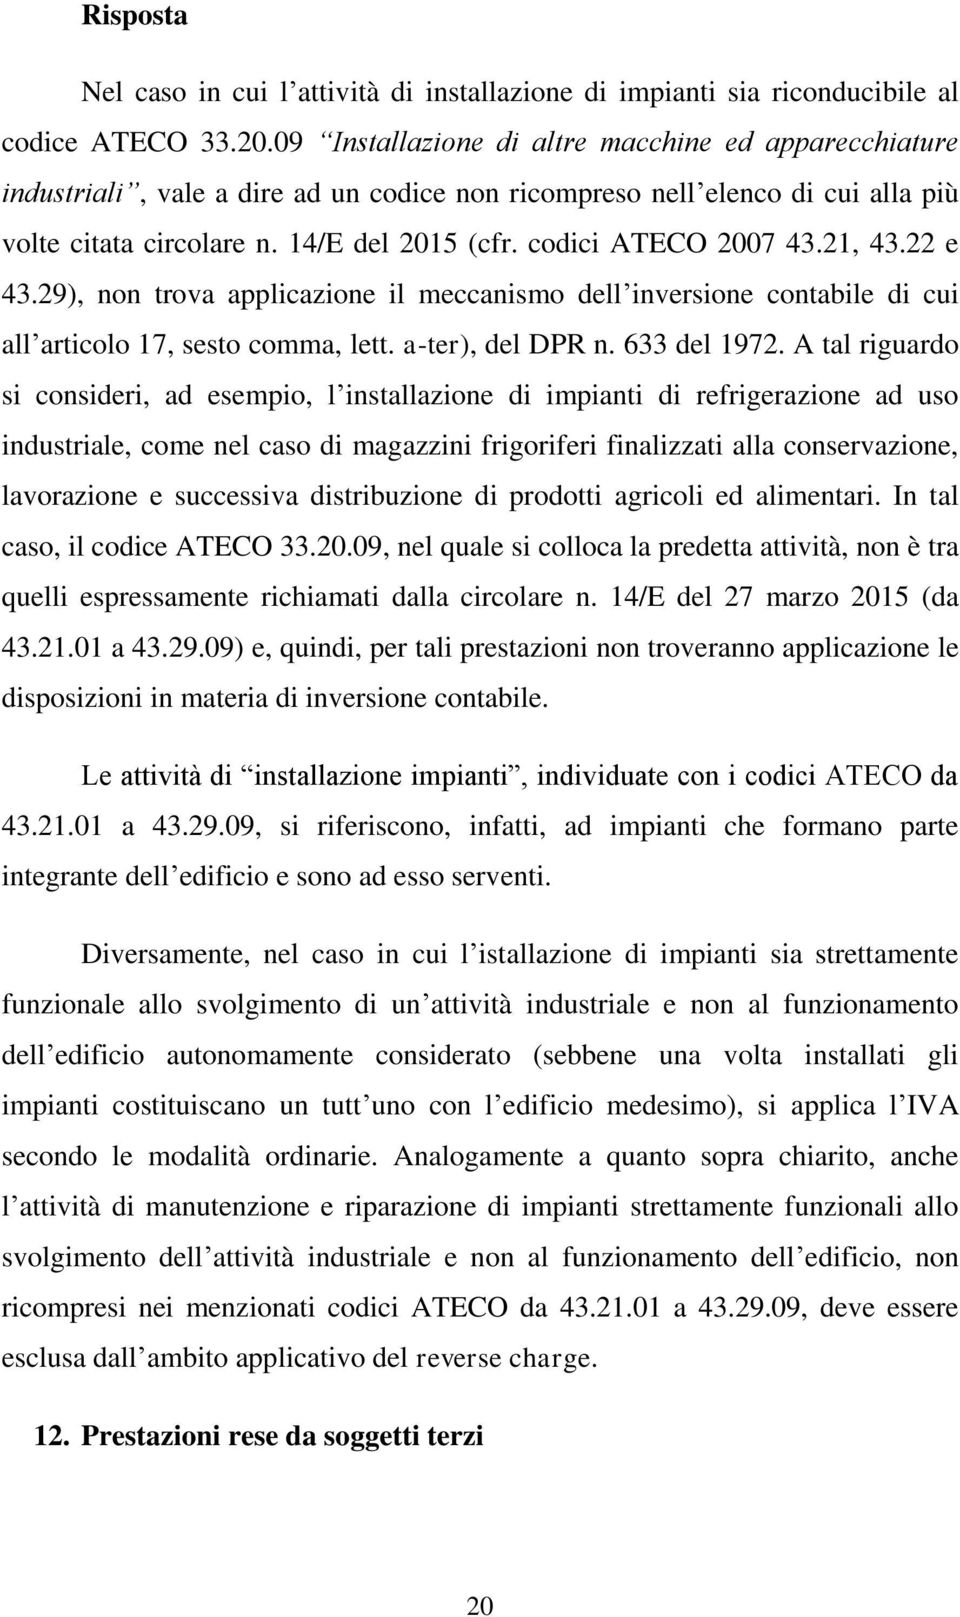 codici ATECO 2007 43.21, 43.22 e 43.29), non trova applicazione il meccanismo dell inversione contabile di cui all articolo 17, sesto comma, lett. a-ter), del DPR n. 633 del 1972.